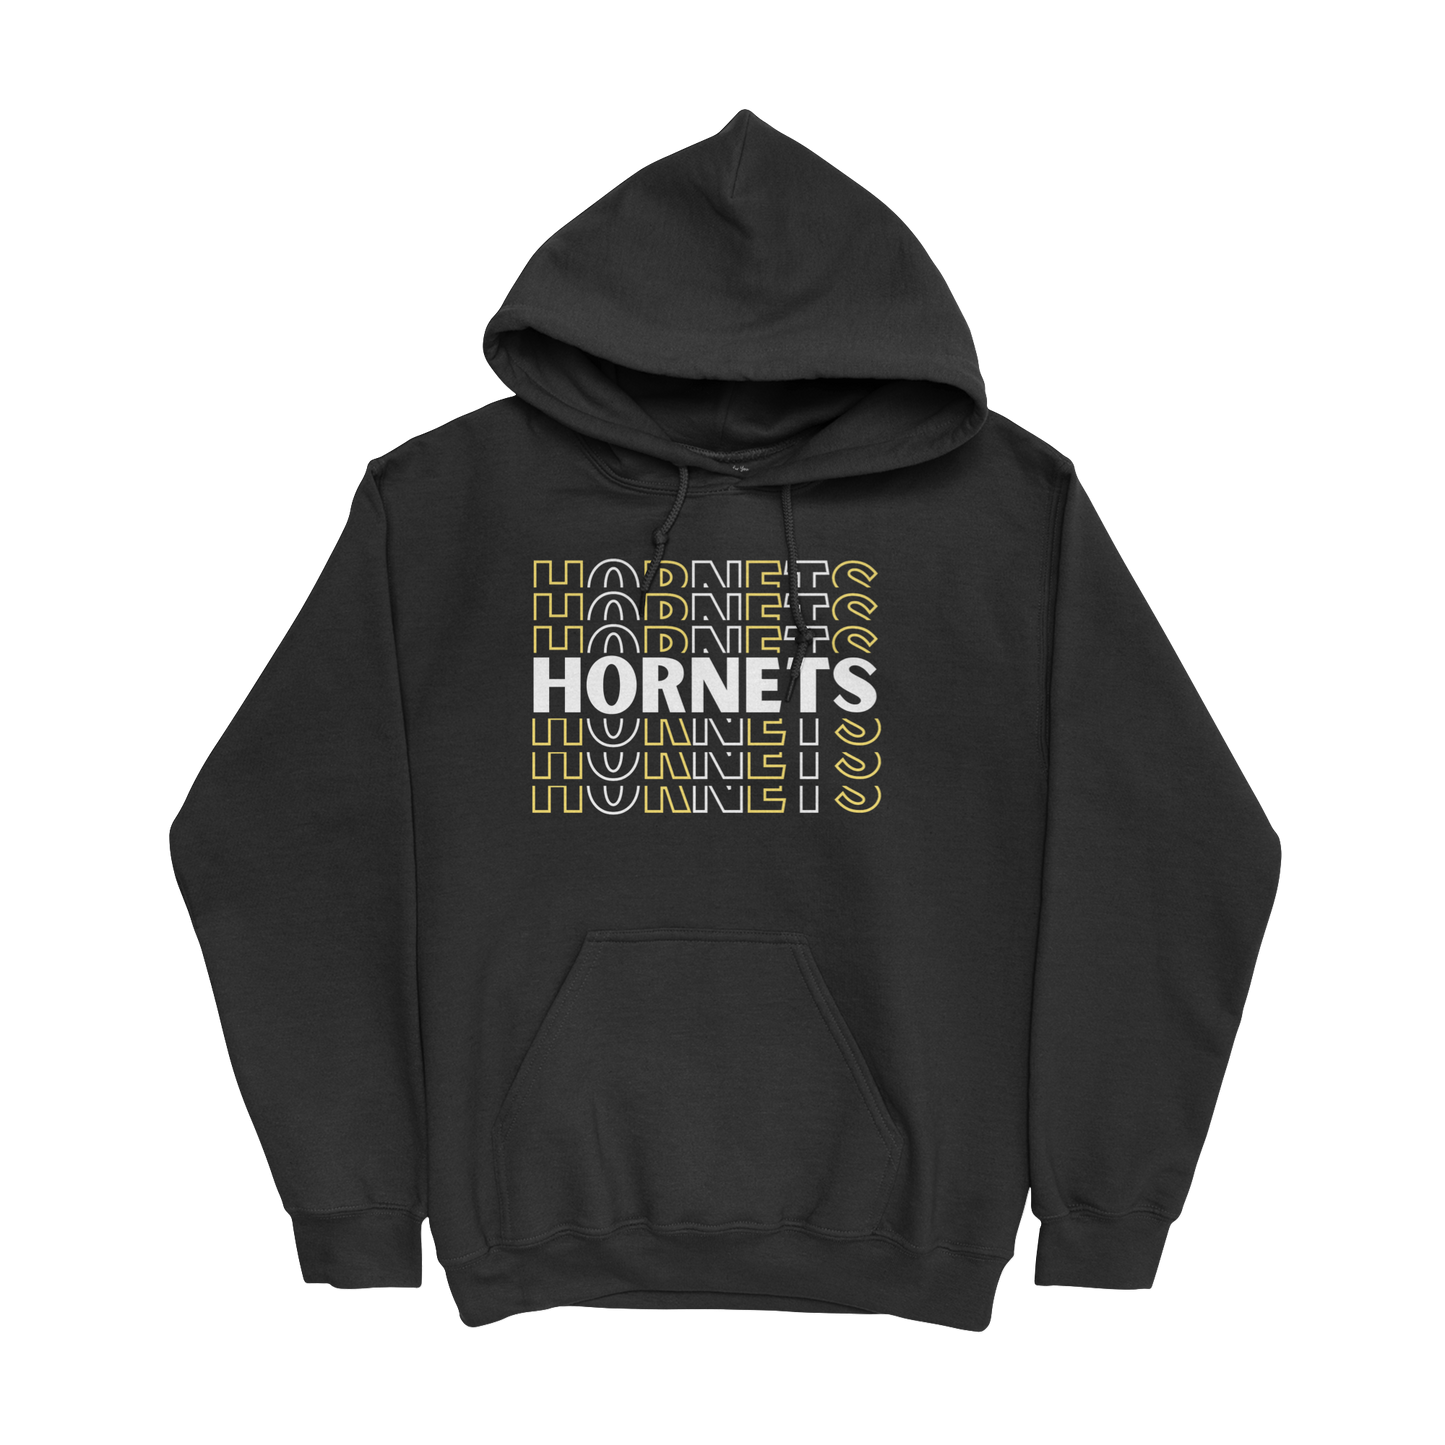 Repeating Hornets Hoodie